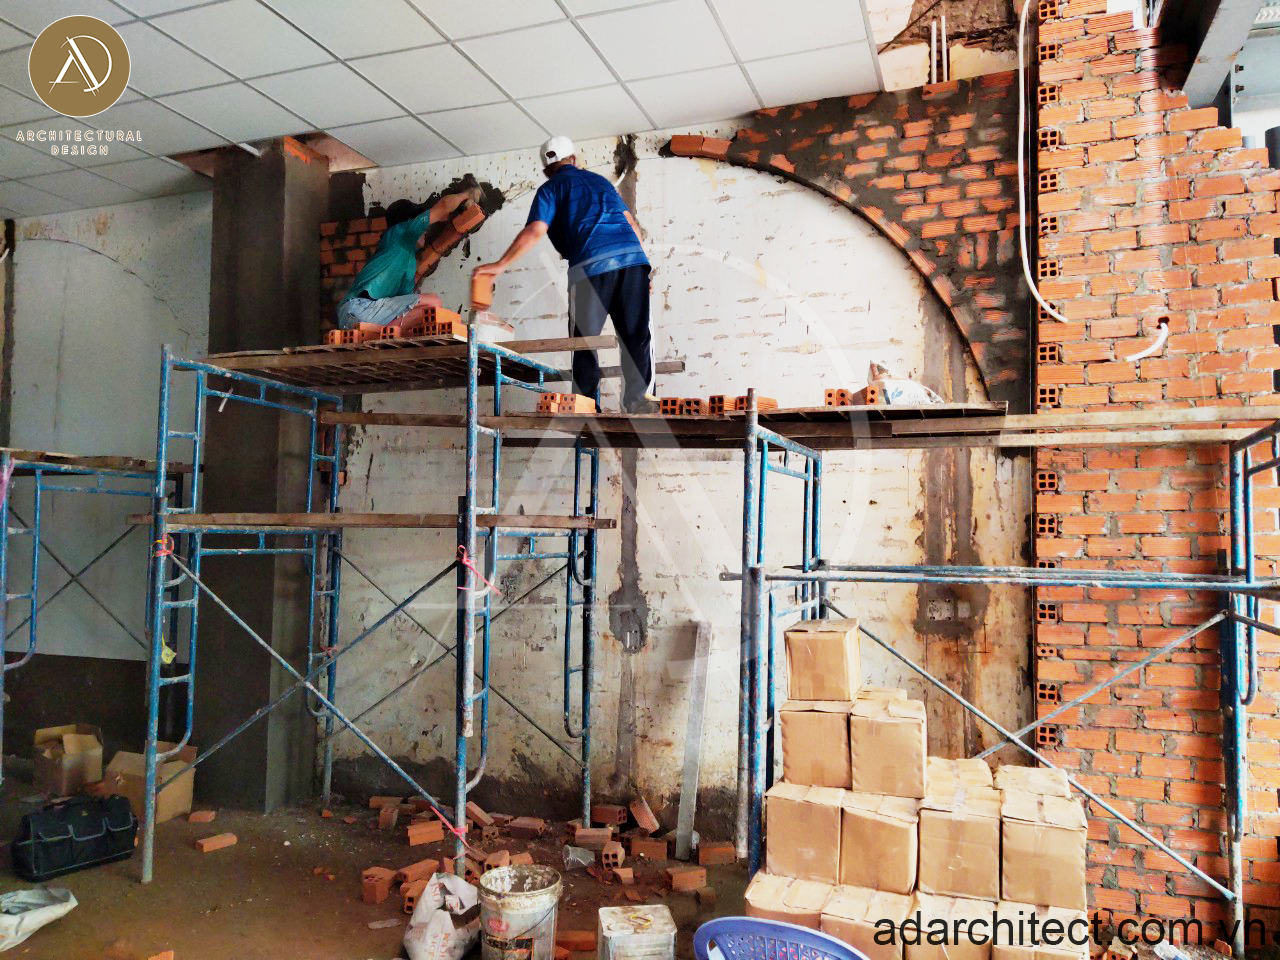 sửa chữa nhà trọn gói: thợ xây ốp gạch tường bo góc vô cùng khéo léo và chỉn chu